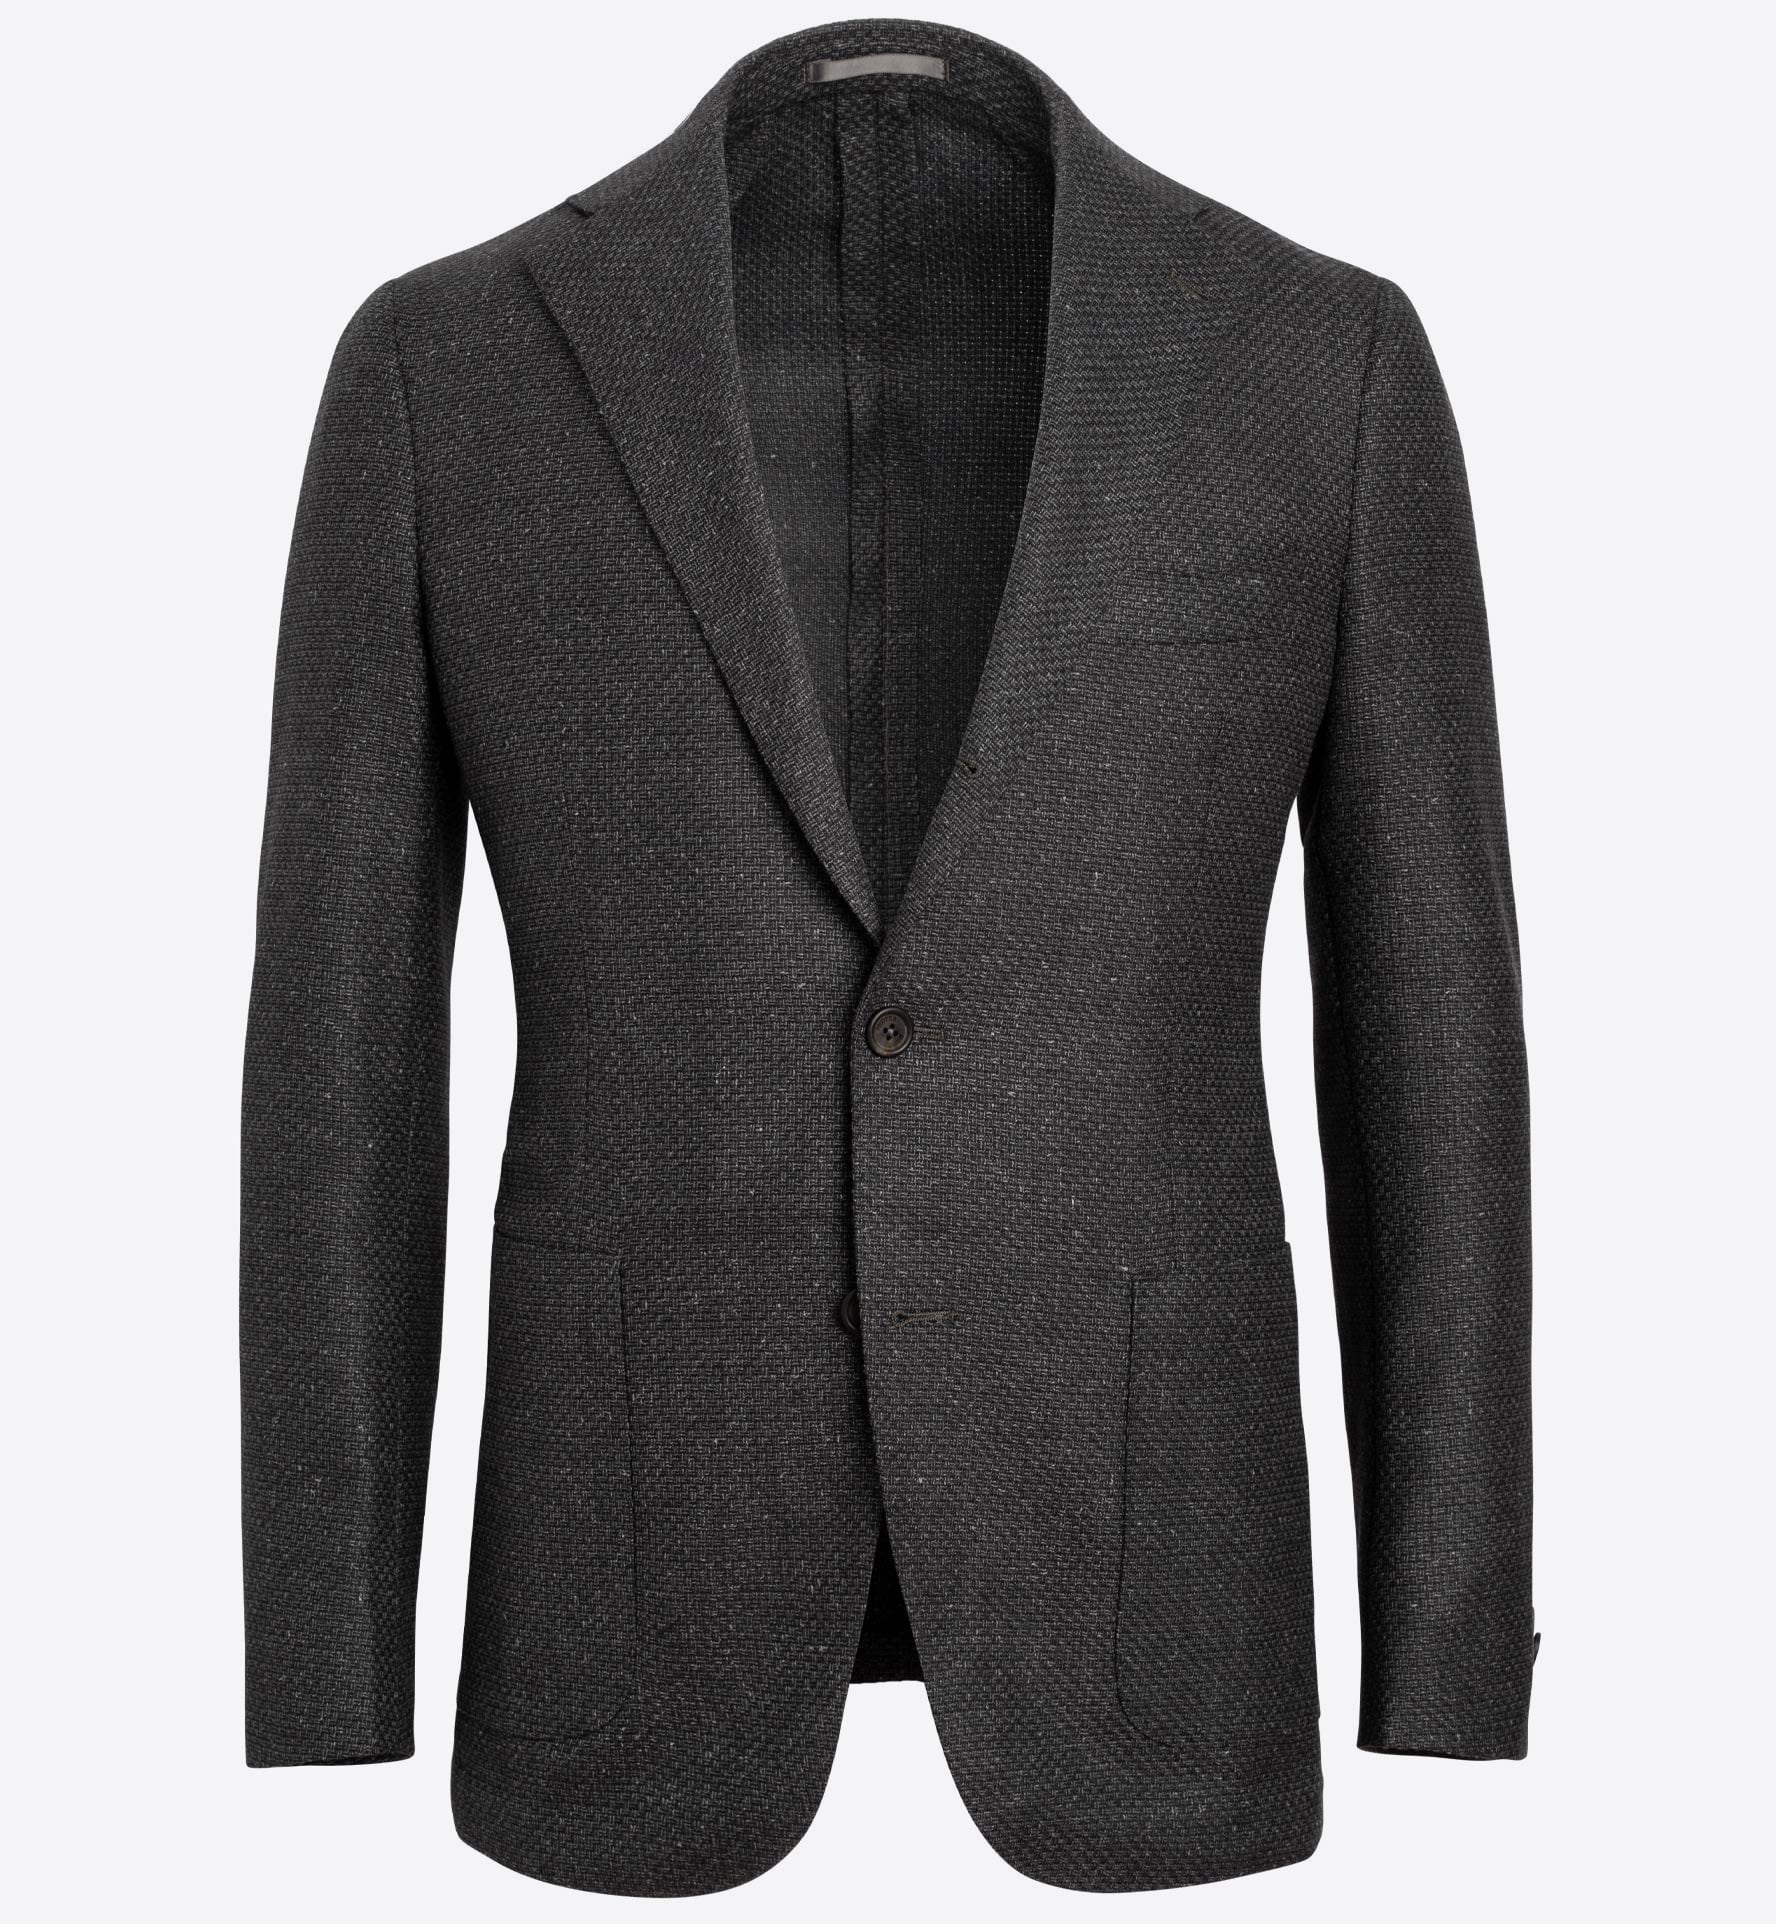 Bedford Dark Grey Melange Basketweave Jacket - Custom Fit Tailored Clothing